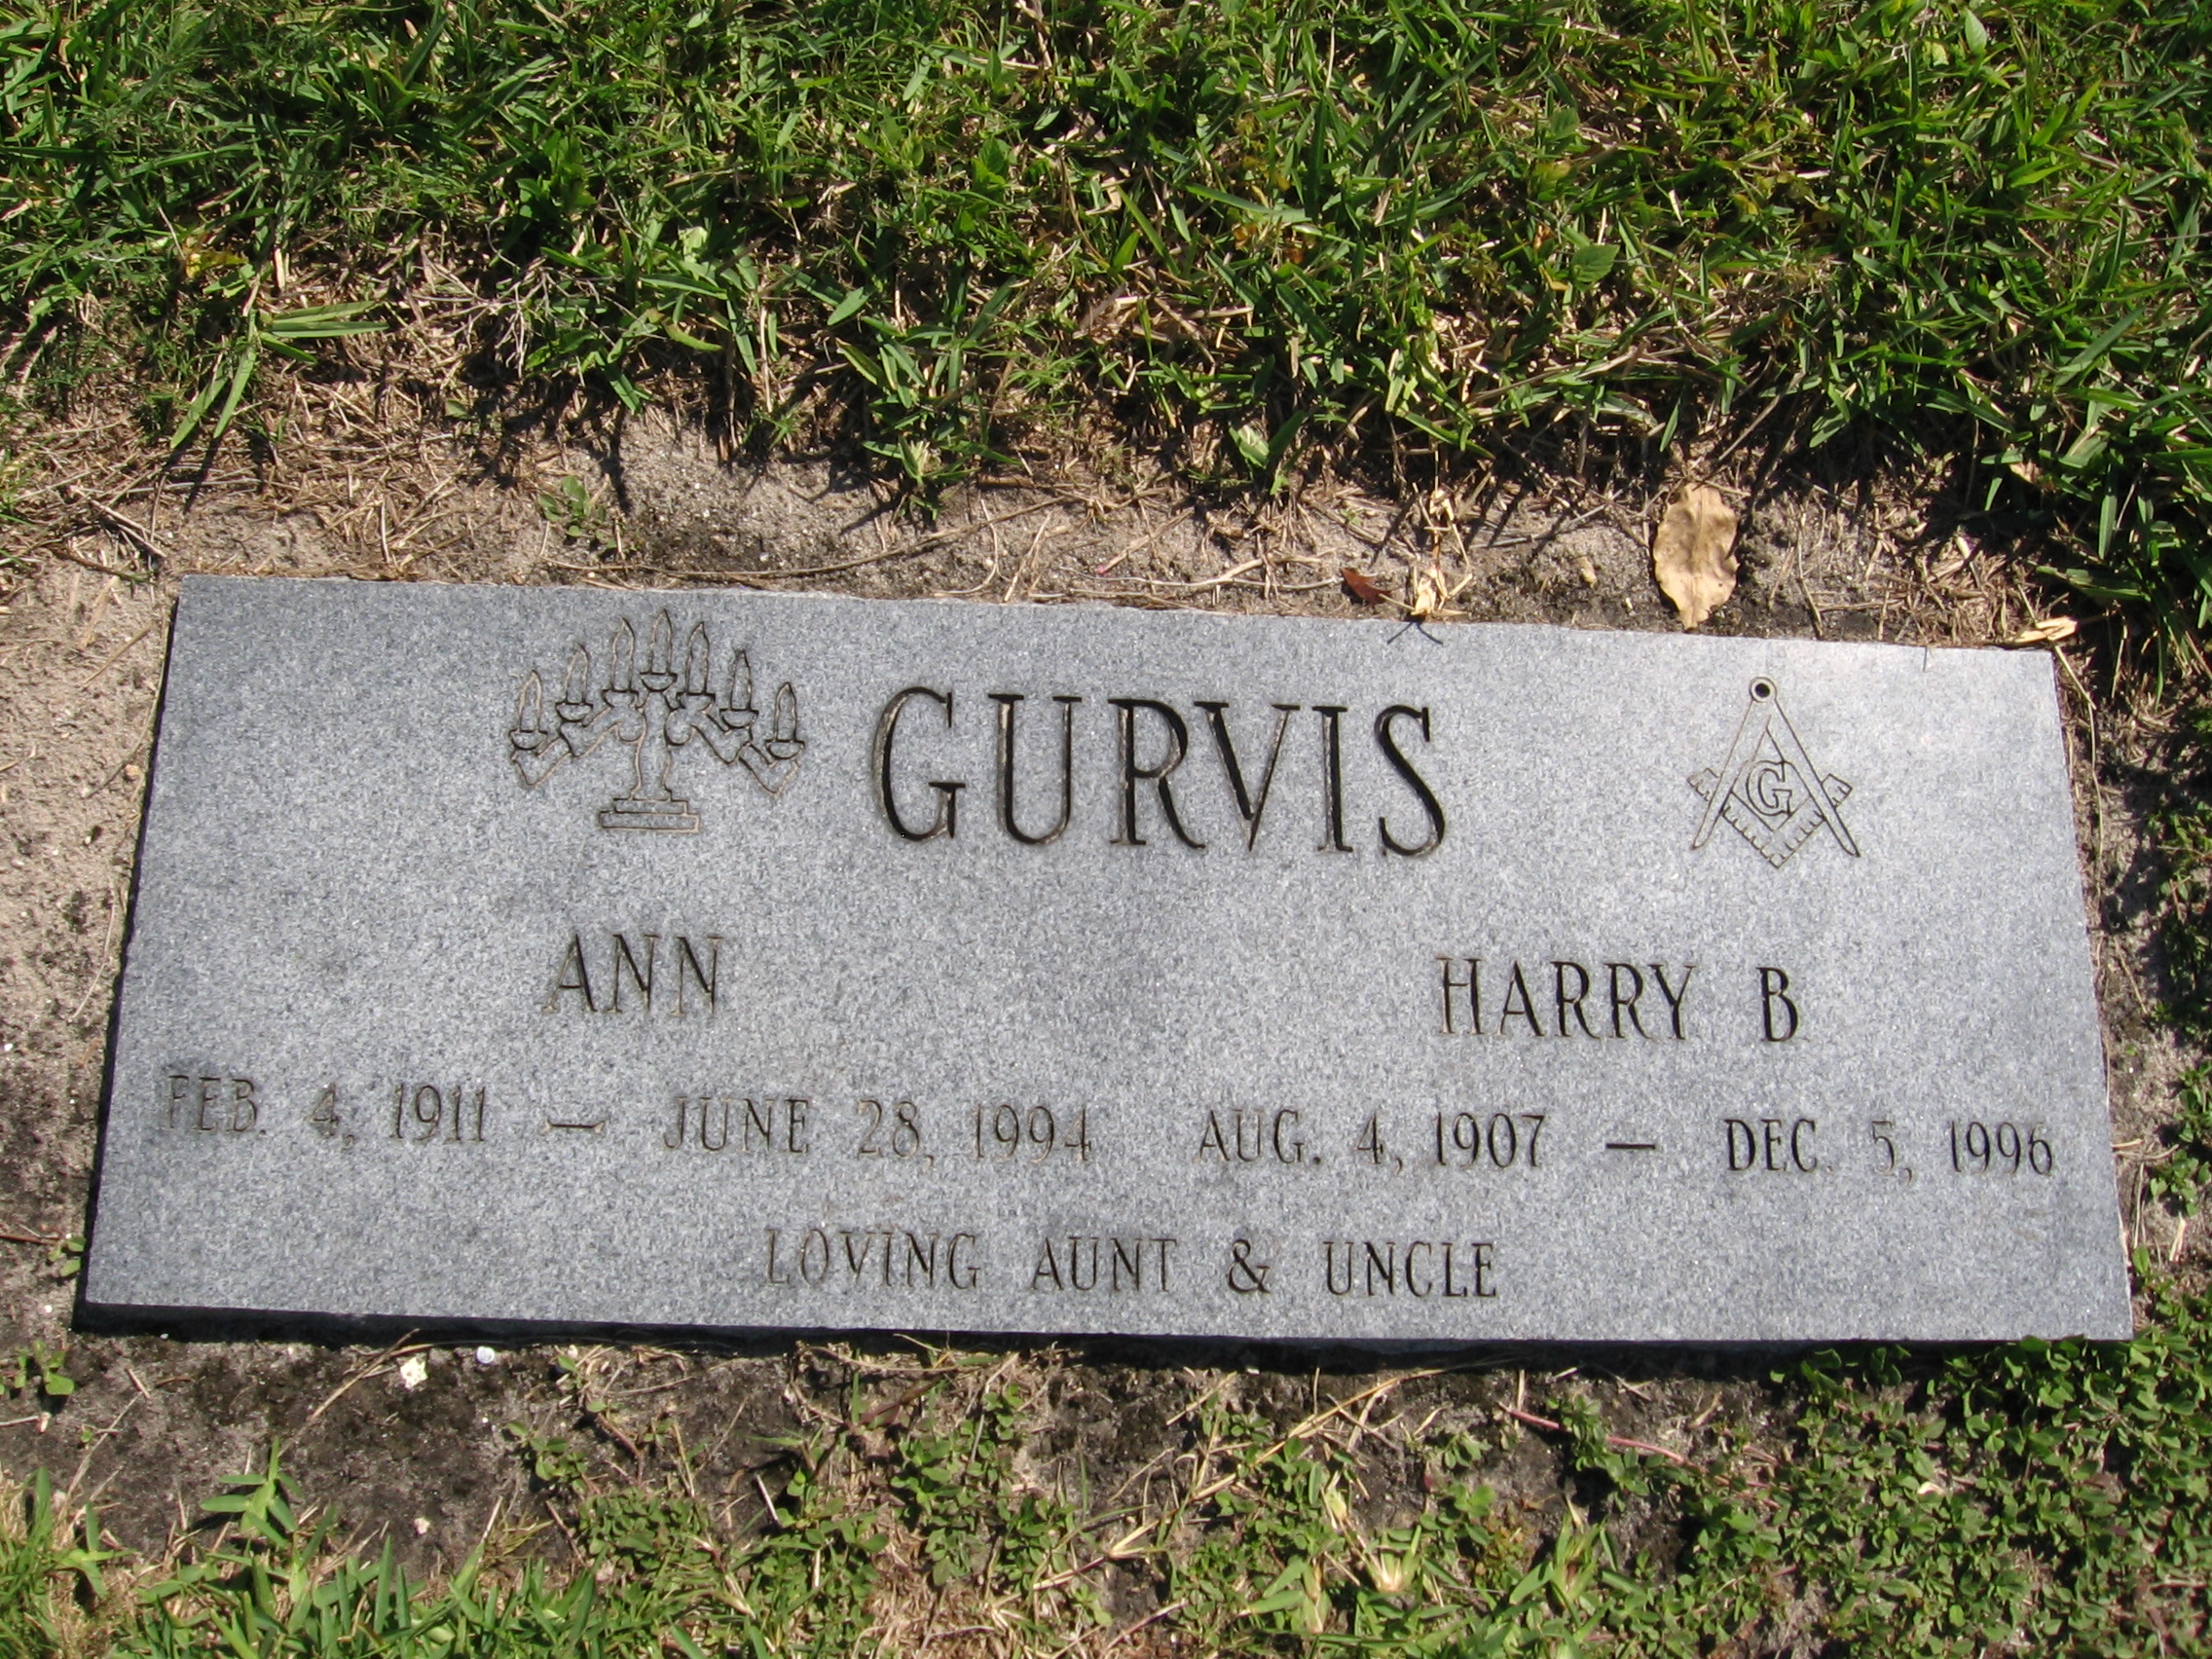 Ann Gurvis